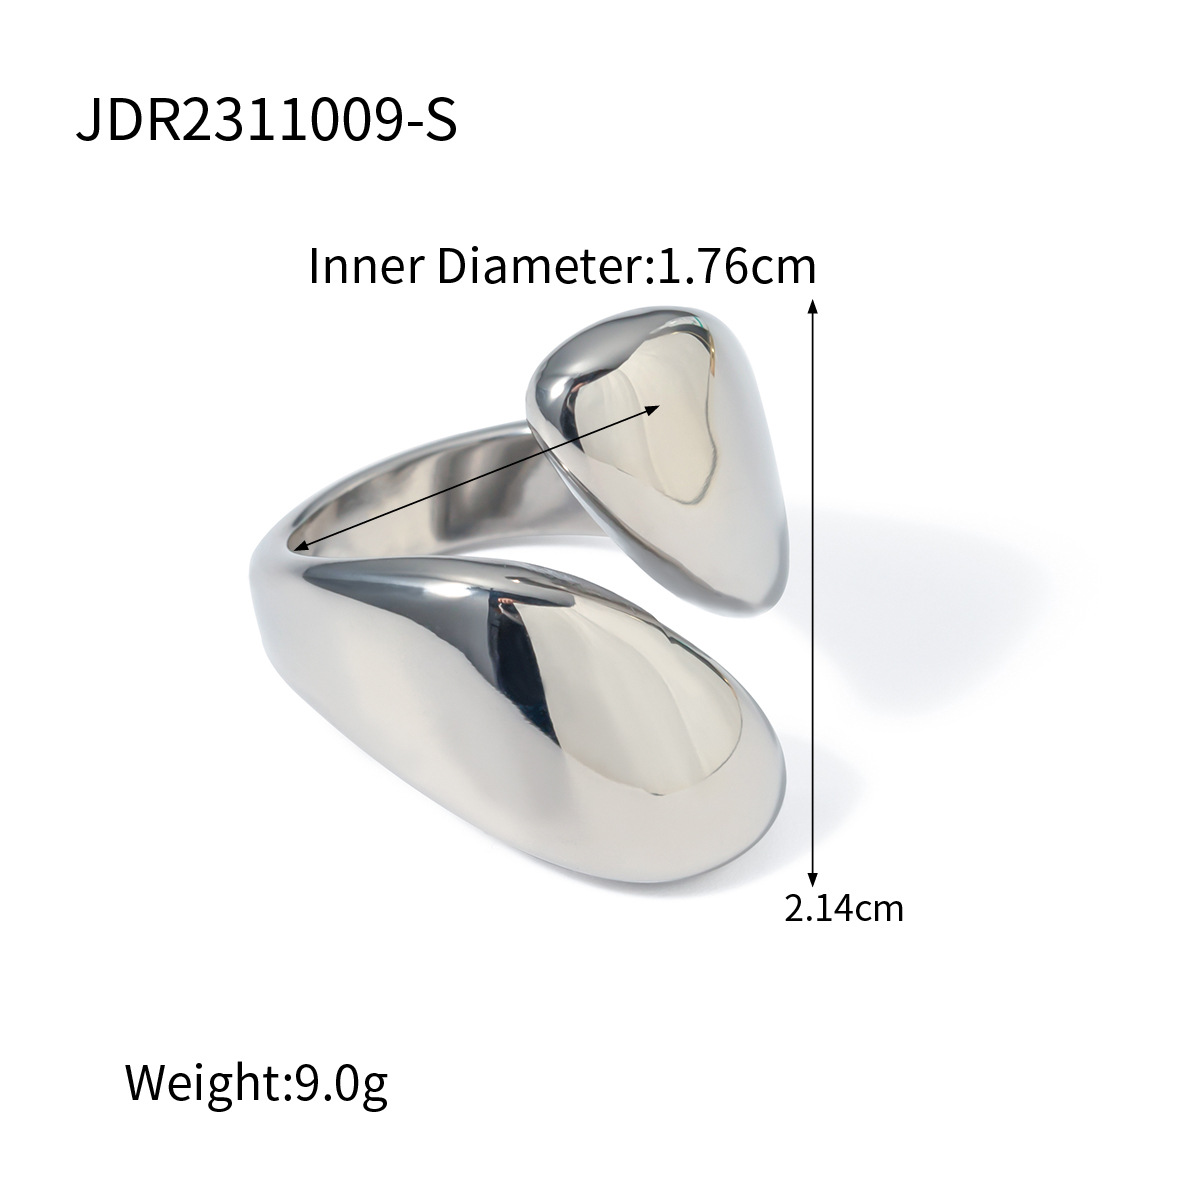 JDR2311009-S